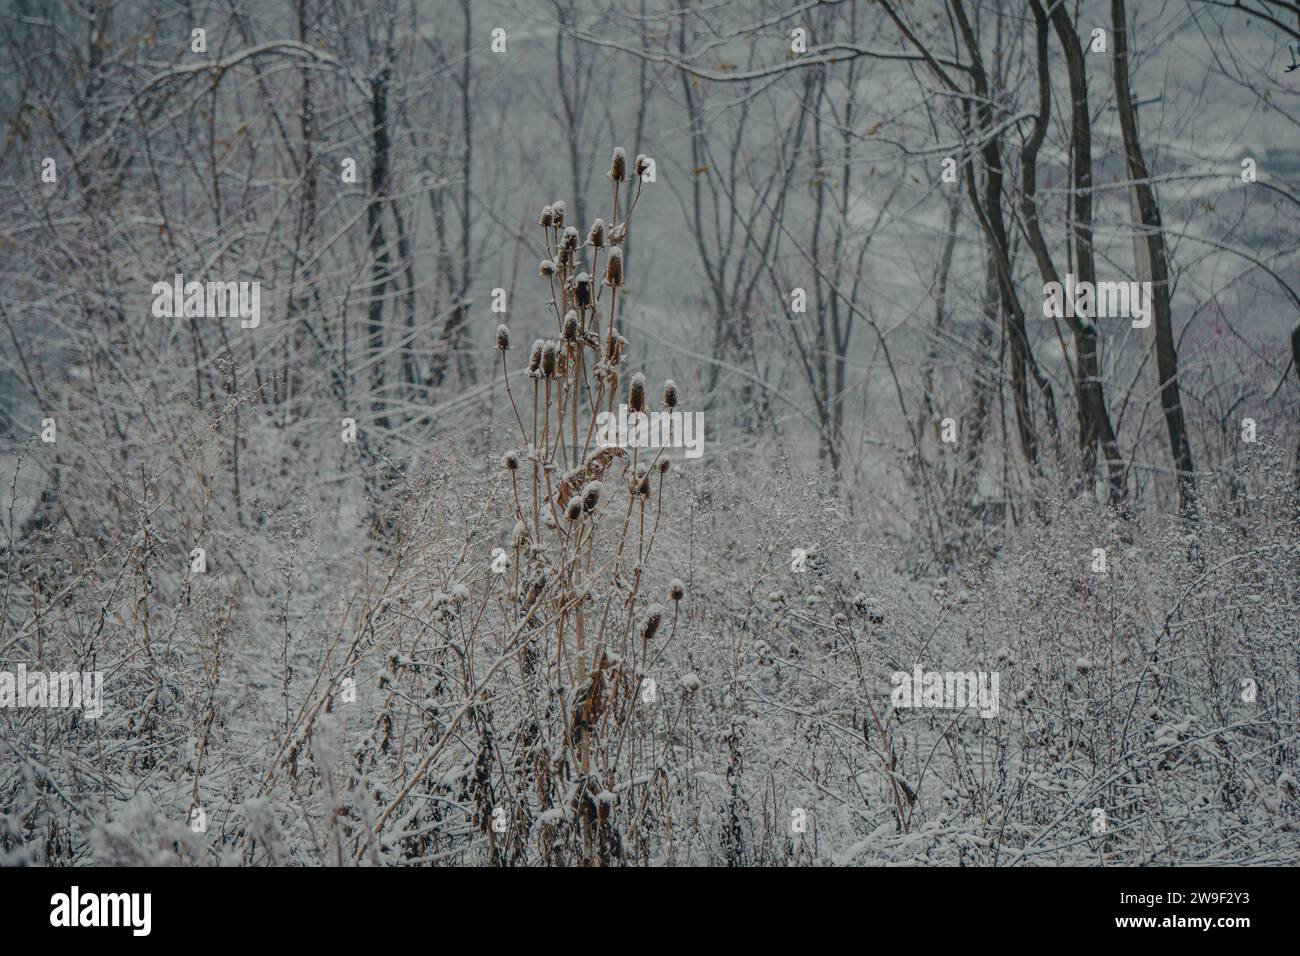 Eine hohe Pflanze in einem Wald, bedeckt mit Schnee, der unberührte weiße Schnee umhüllt die Pflanze Stockfoto